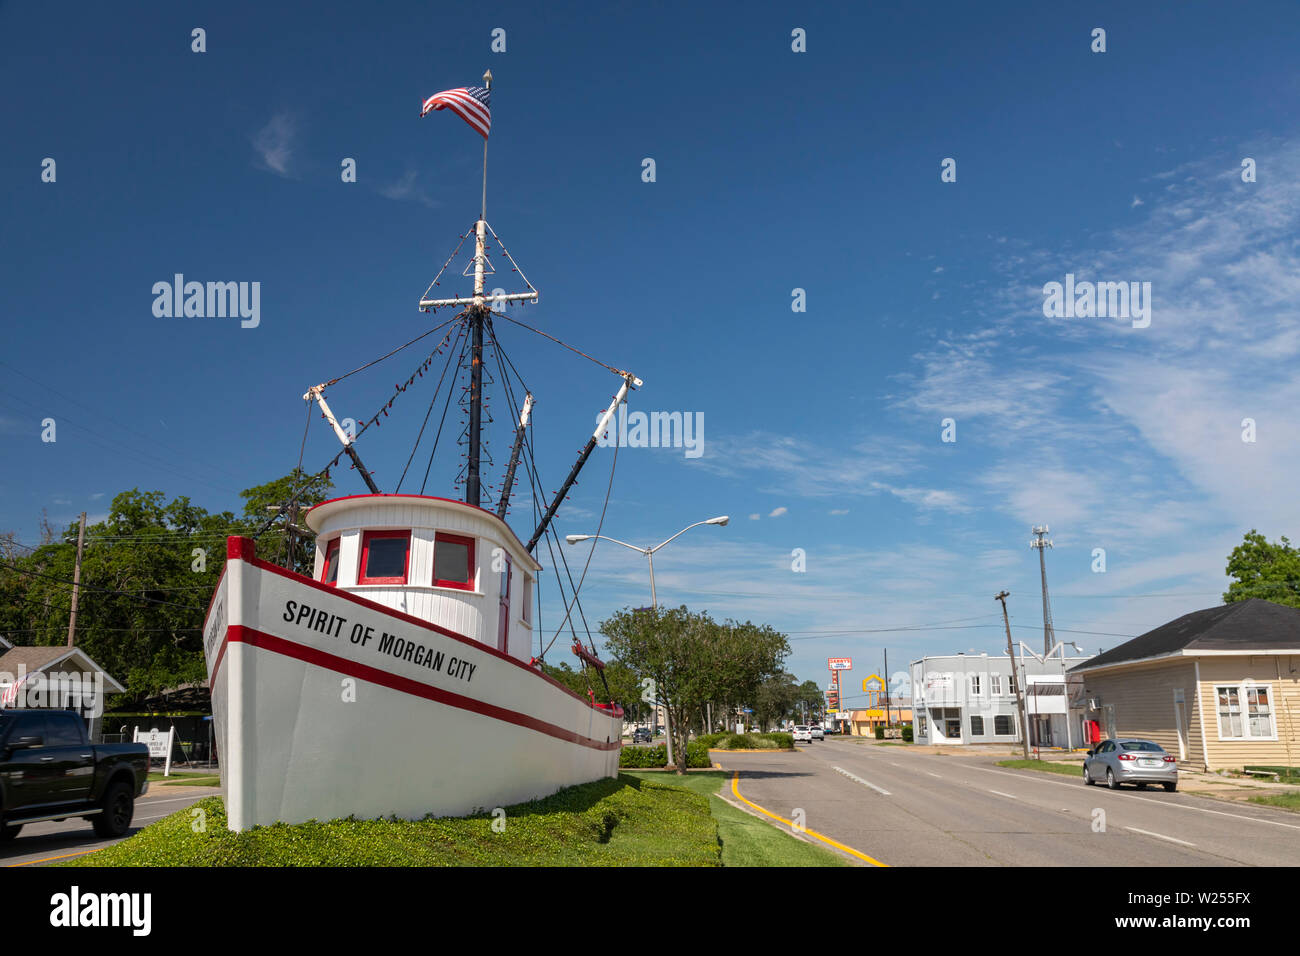 Morgan City, Louisiana - Der Geist von Morgan City shrimp trawlers, an der Hauptstraße der Stadt installiert. Shrimping ist eine große Industrie in Morgan City, Stockfoto